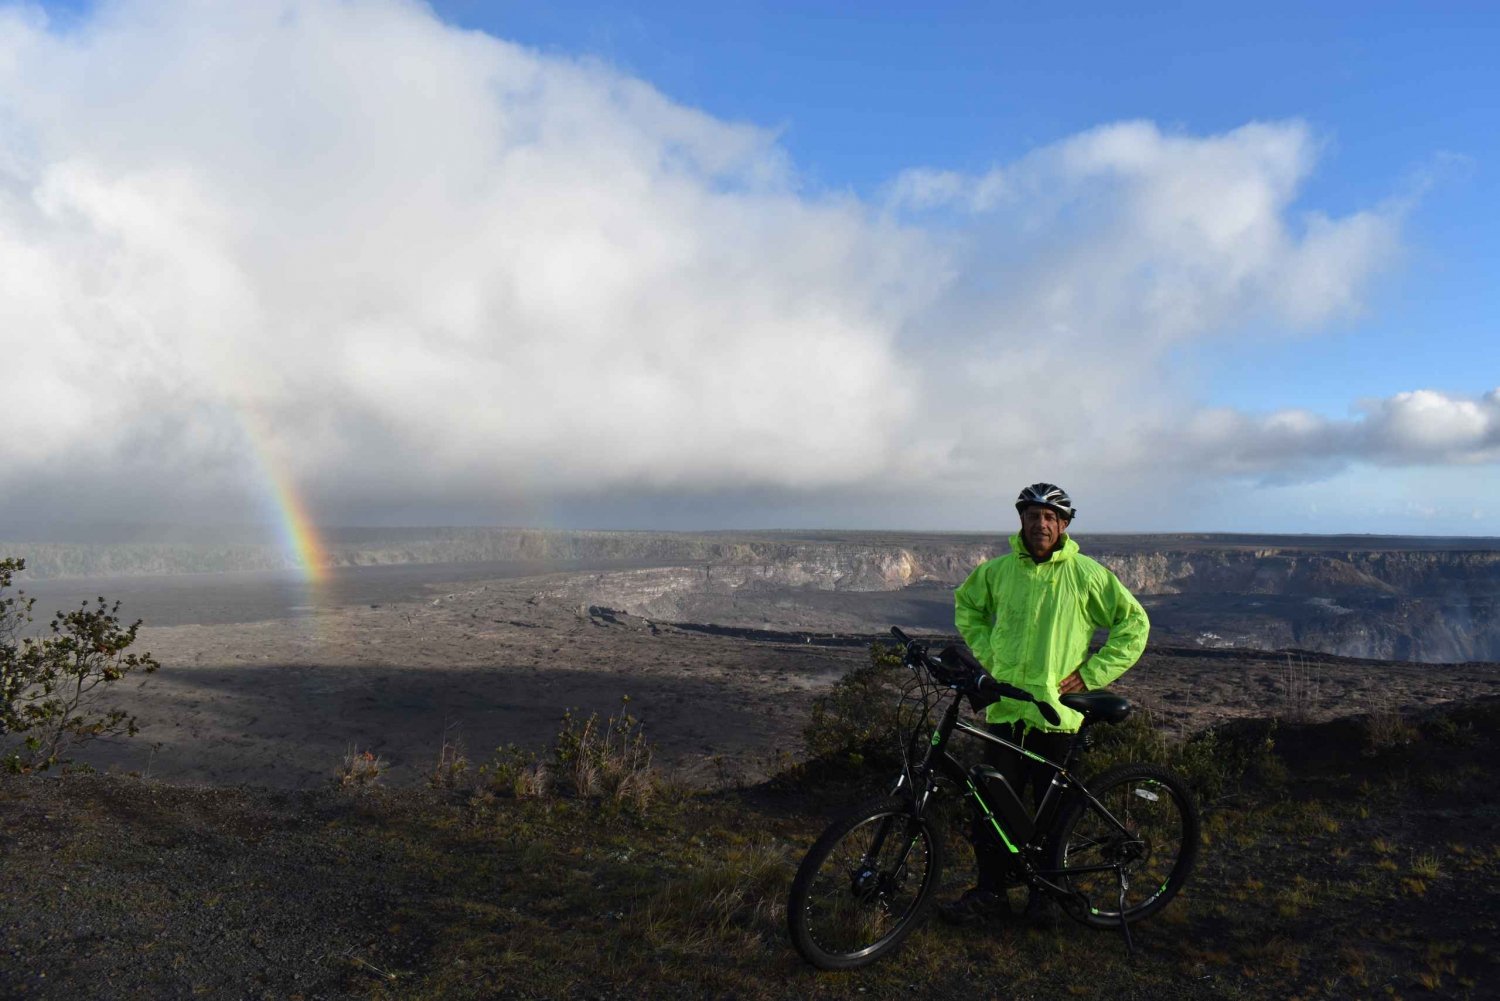 Havaijilla: Kansallispuisto: Volcanoesin kansallispuisto E-Bike vuokraus ja GPS Audio